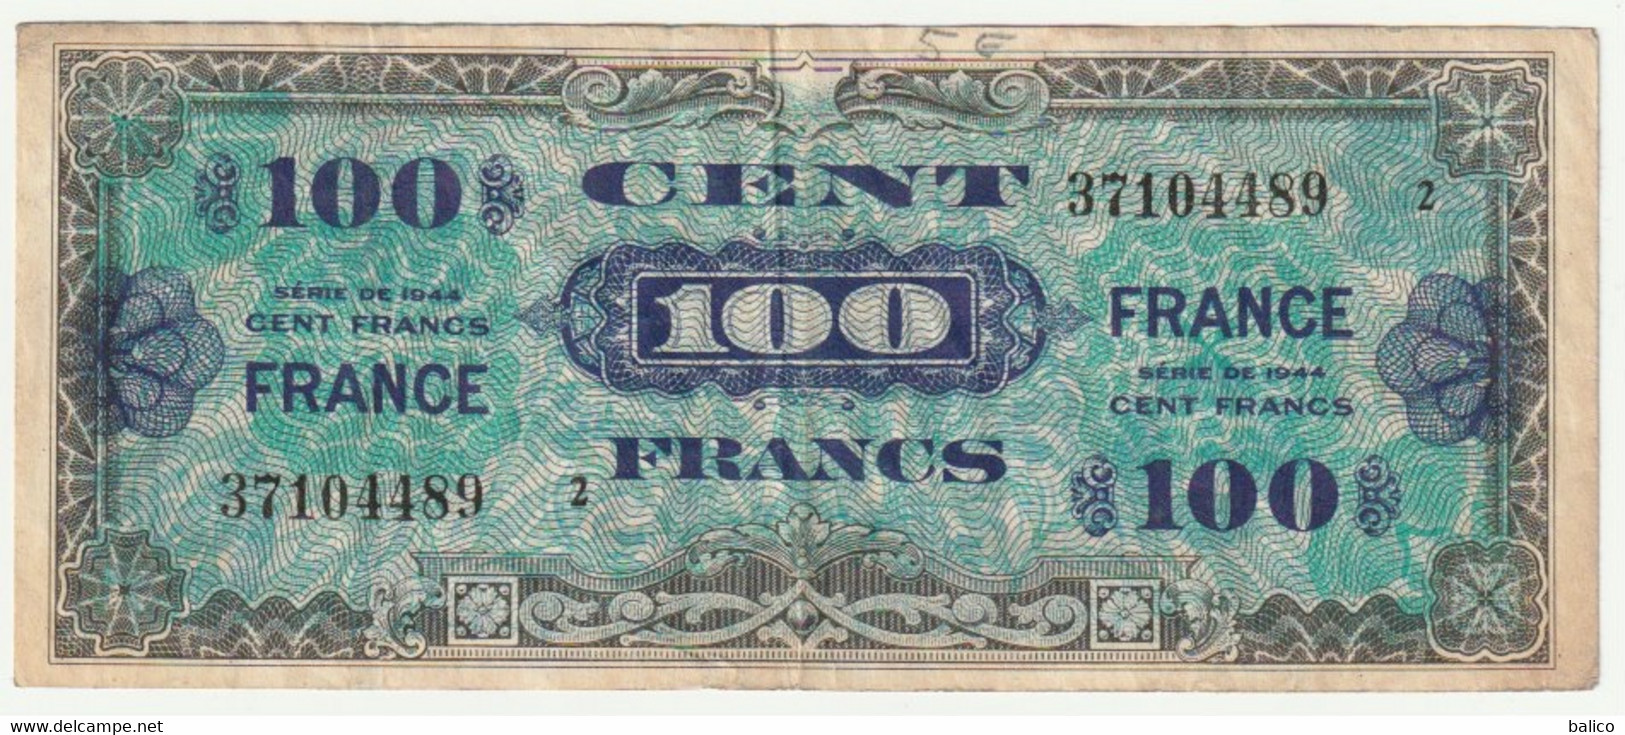 France, 100 Francs   1944   N° 37104489 - 1944 Flag/France